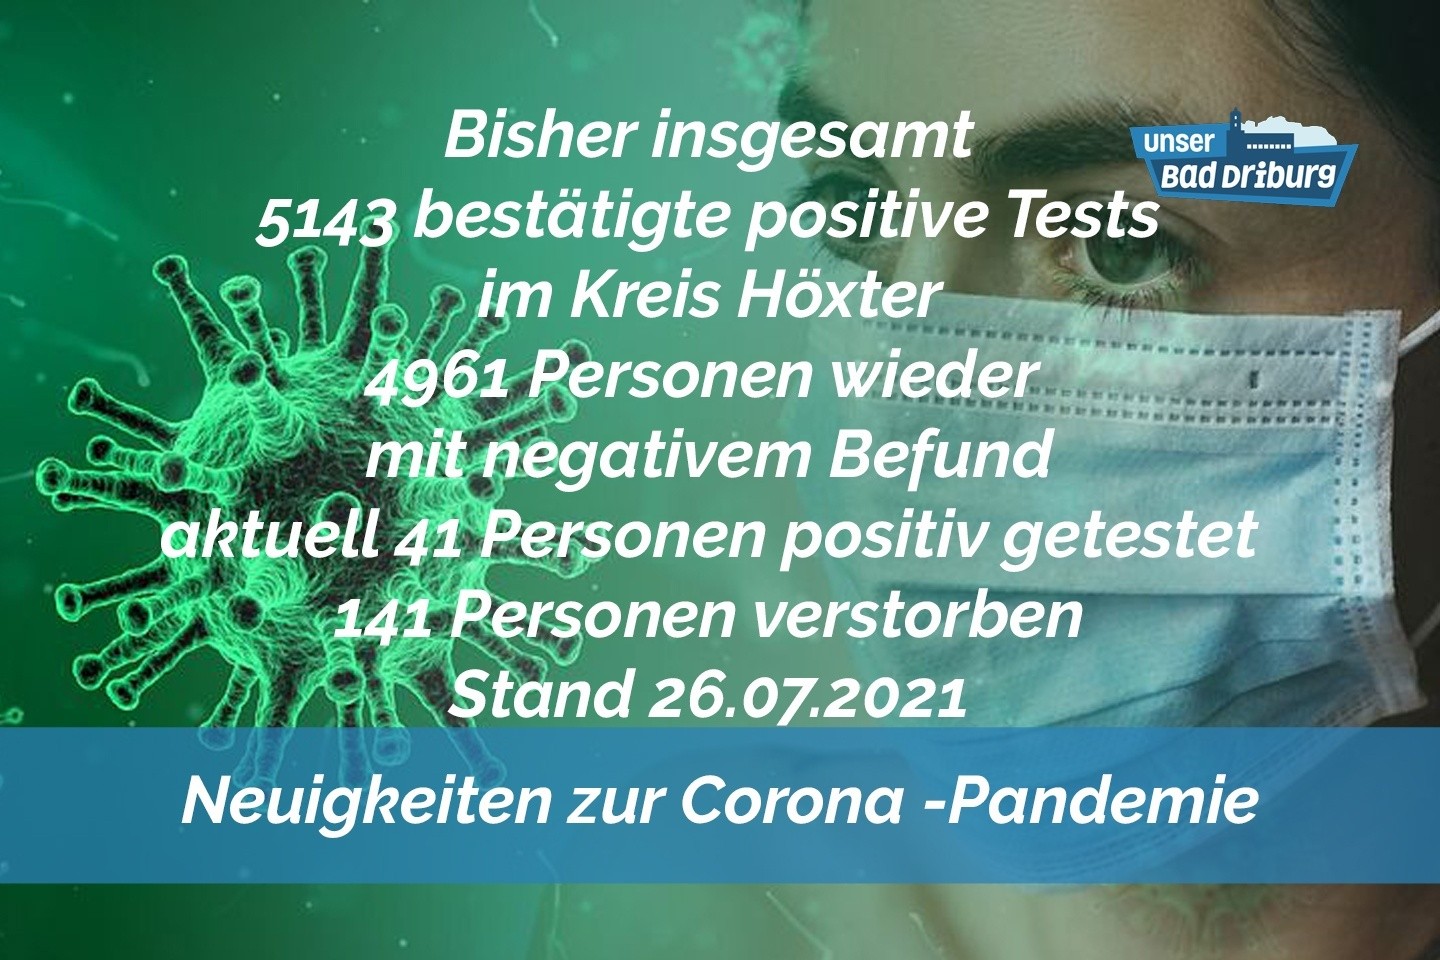 Update 26. Juli: Nur 1 weiterer amtlich positiver Test im Kreis Höxter